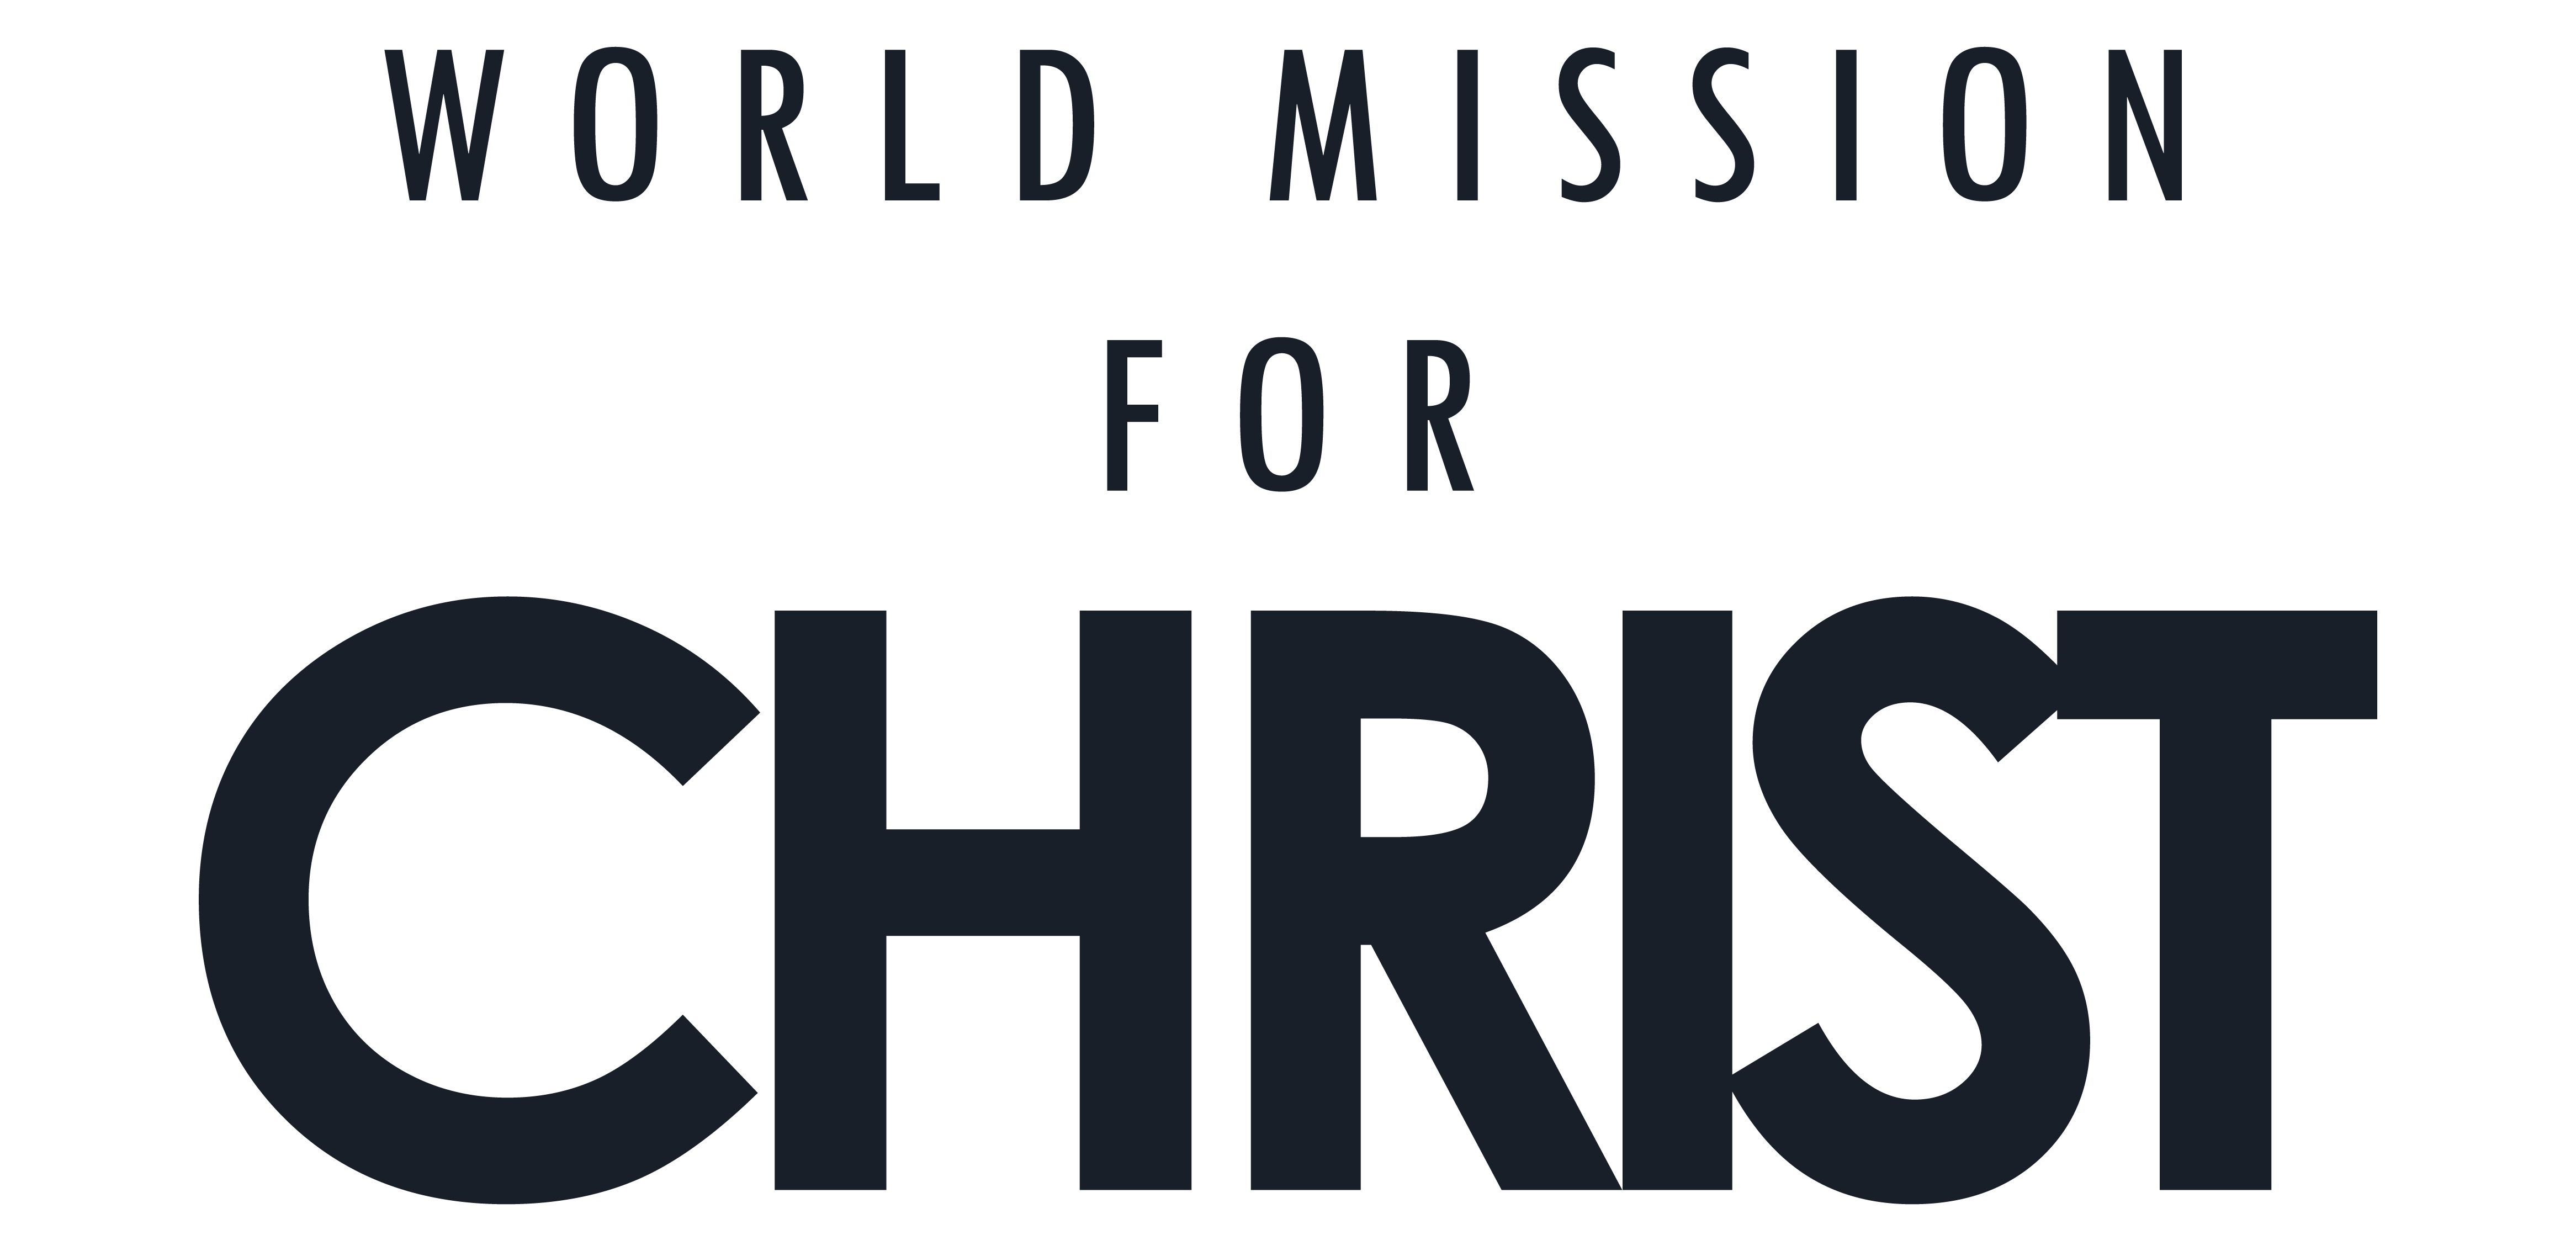 World Mission for Christ